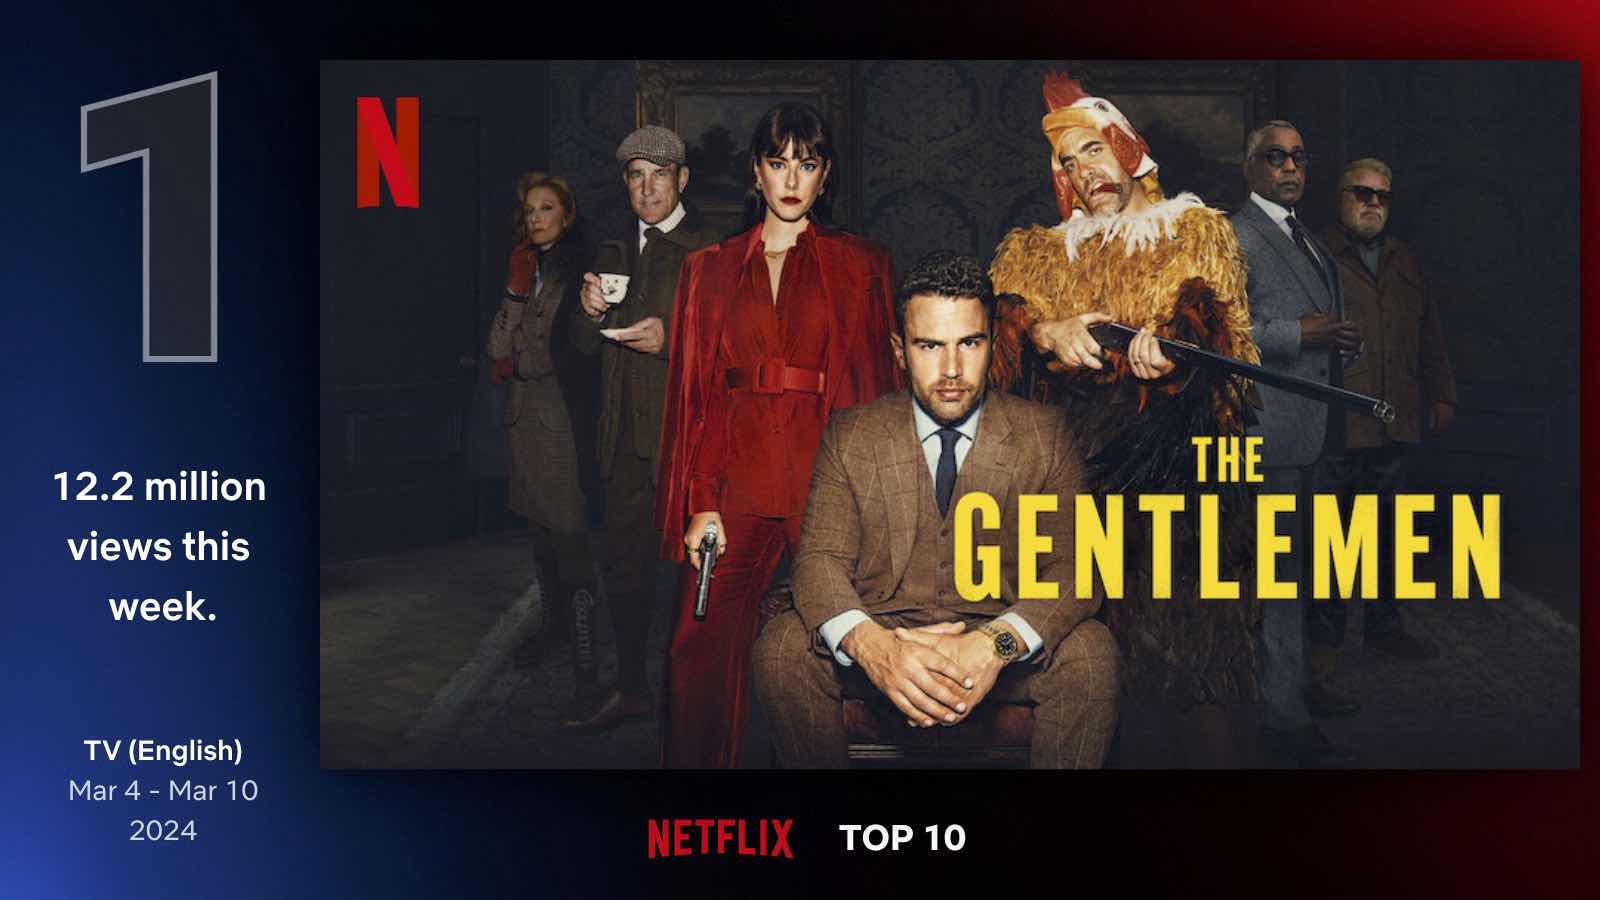 The Gentlemen, en el primer lugar de lo más visto en series de TV en inglés en Netflix (Del 4 al 10 de marzo)